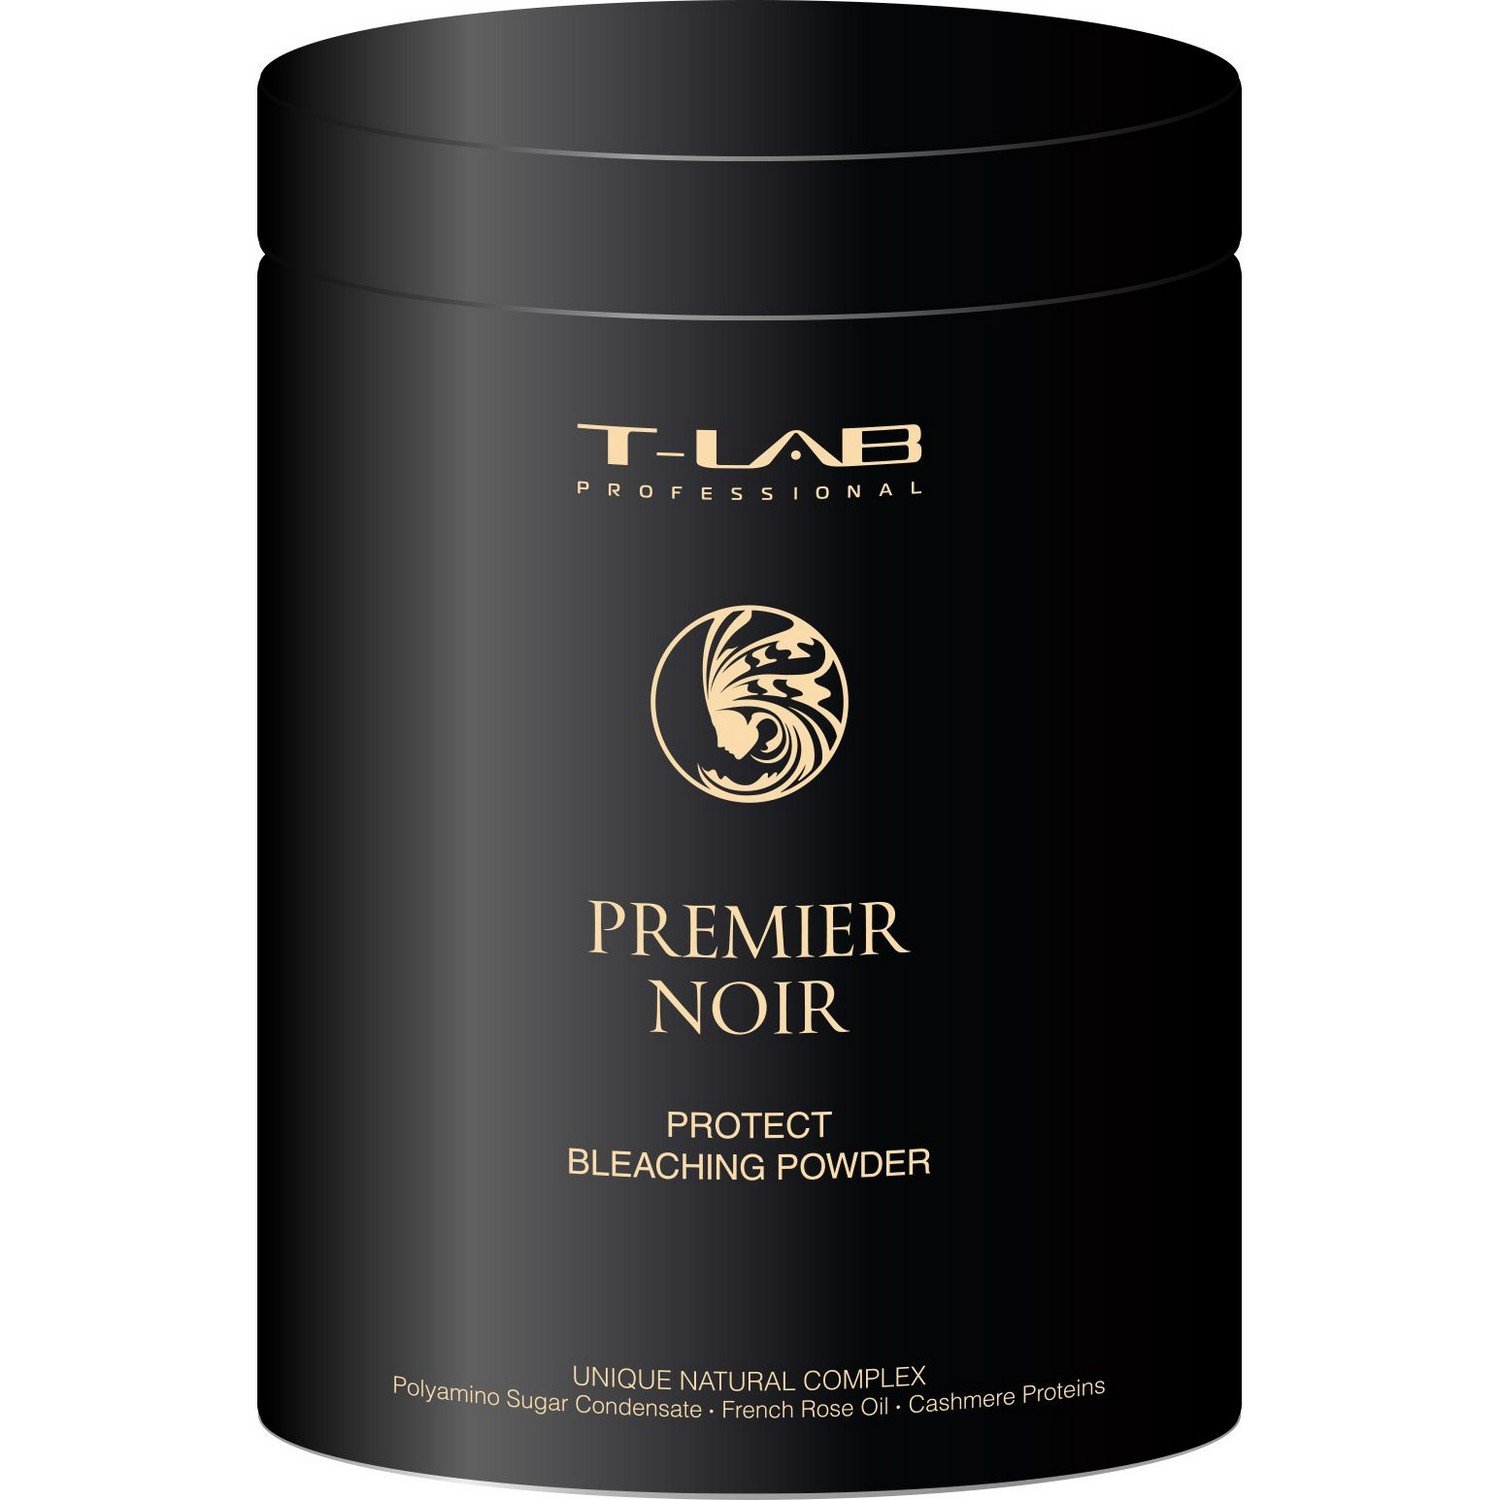 Пудра T-LAB Professional Premier Noir Protect Bleaching Powder для захисту та освітлення волосся, 500 г - фото 1